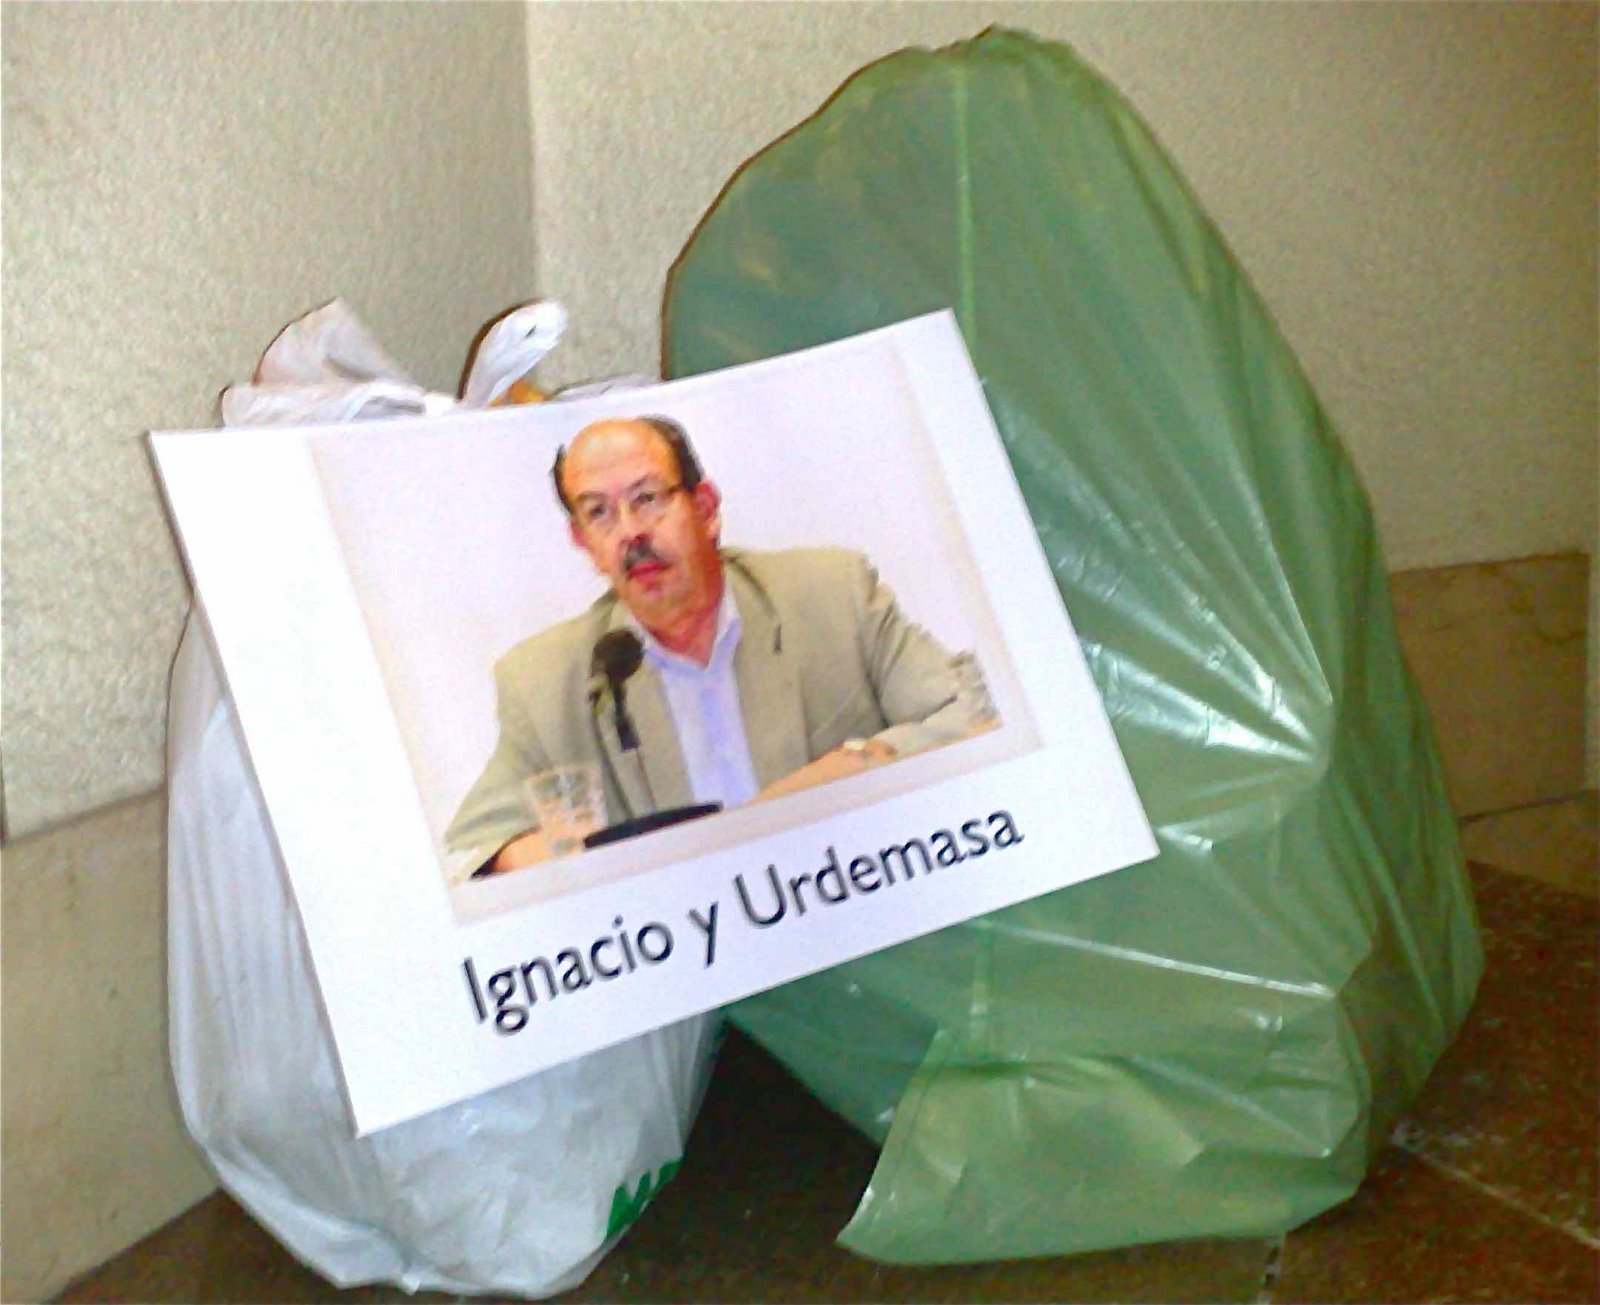 [Ignacio,+Urdemasa+basura.jpg]